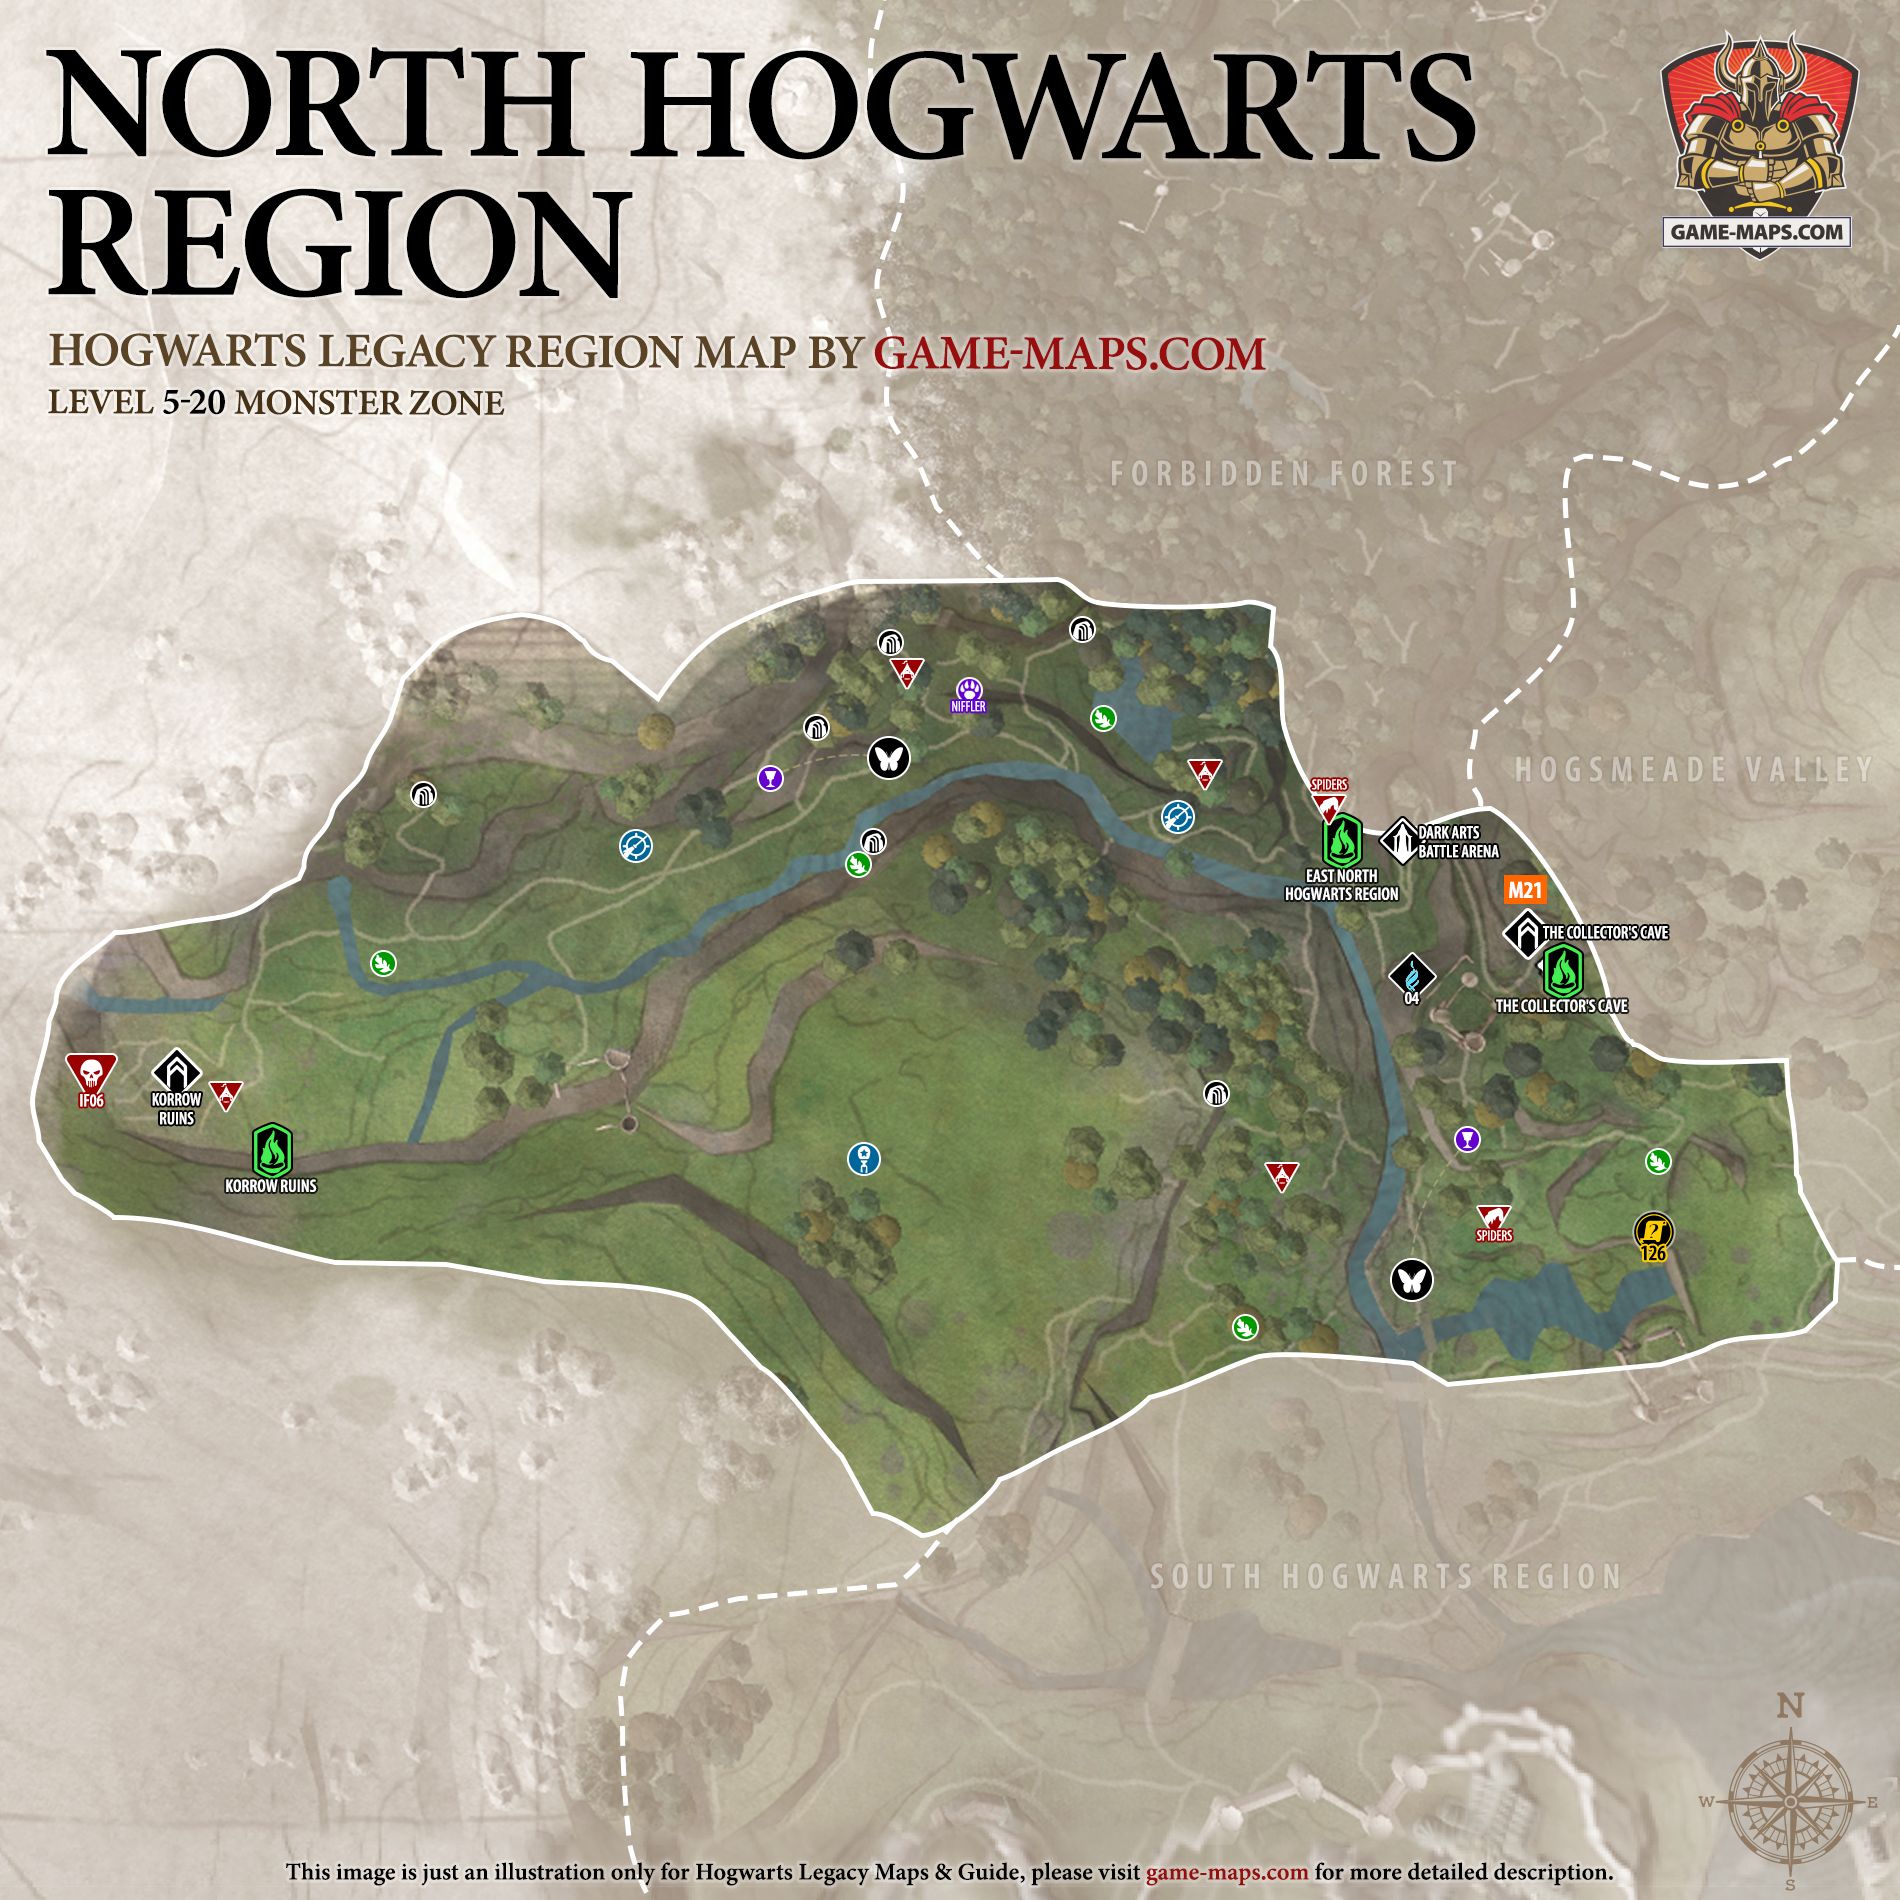 Hogwarts Legacy Map of North Hogwarts Region